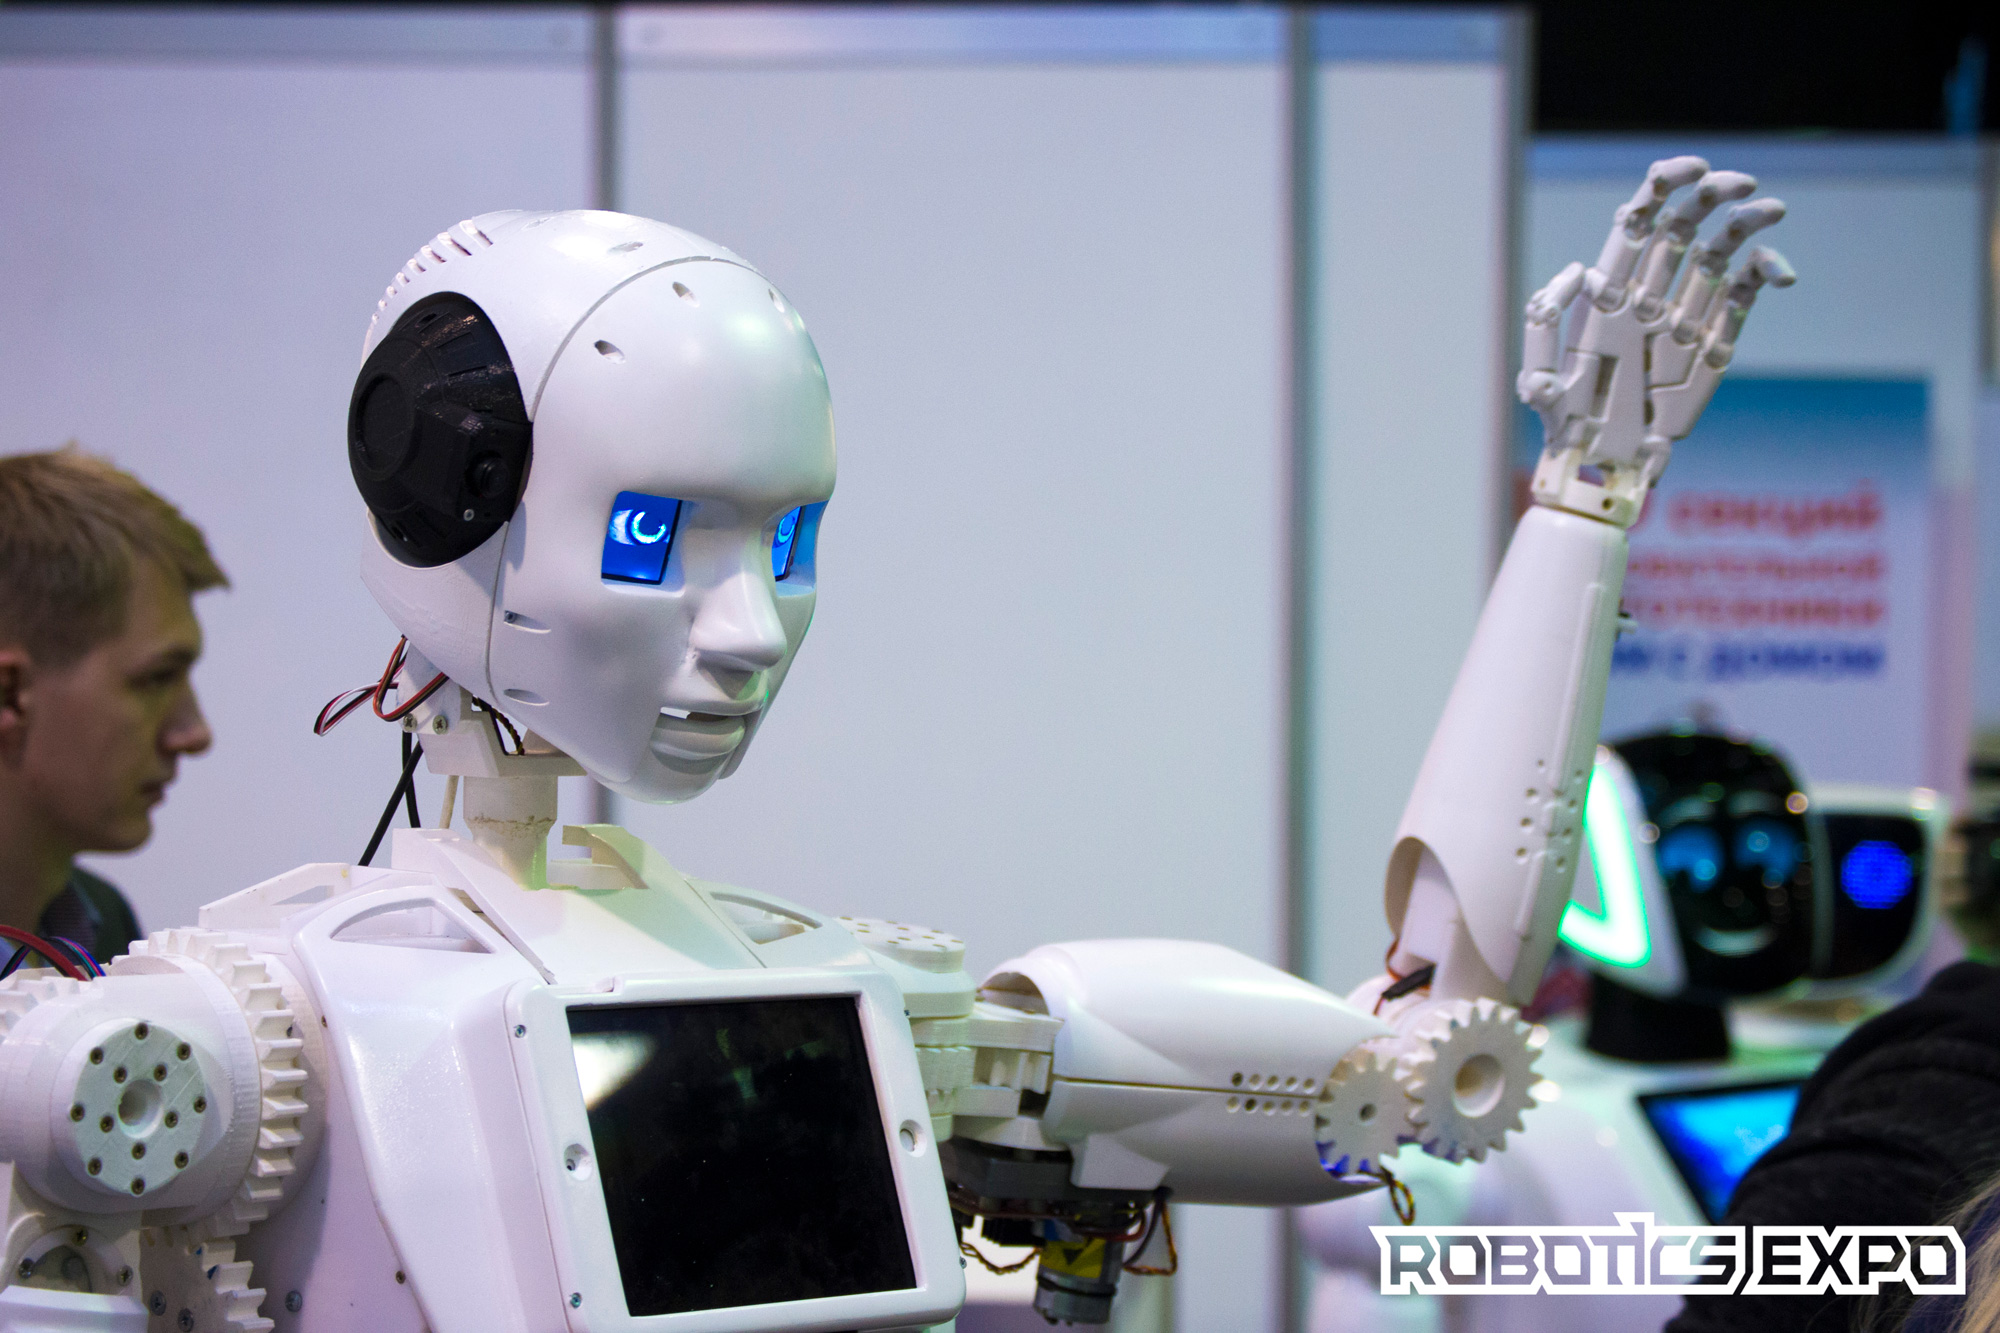 Robotics Expo: Robotics Expo 2017 summary - 4